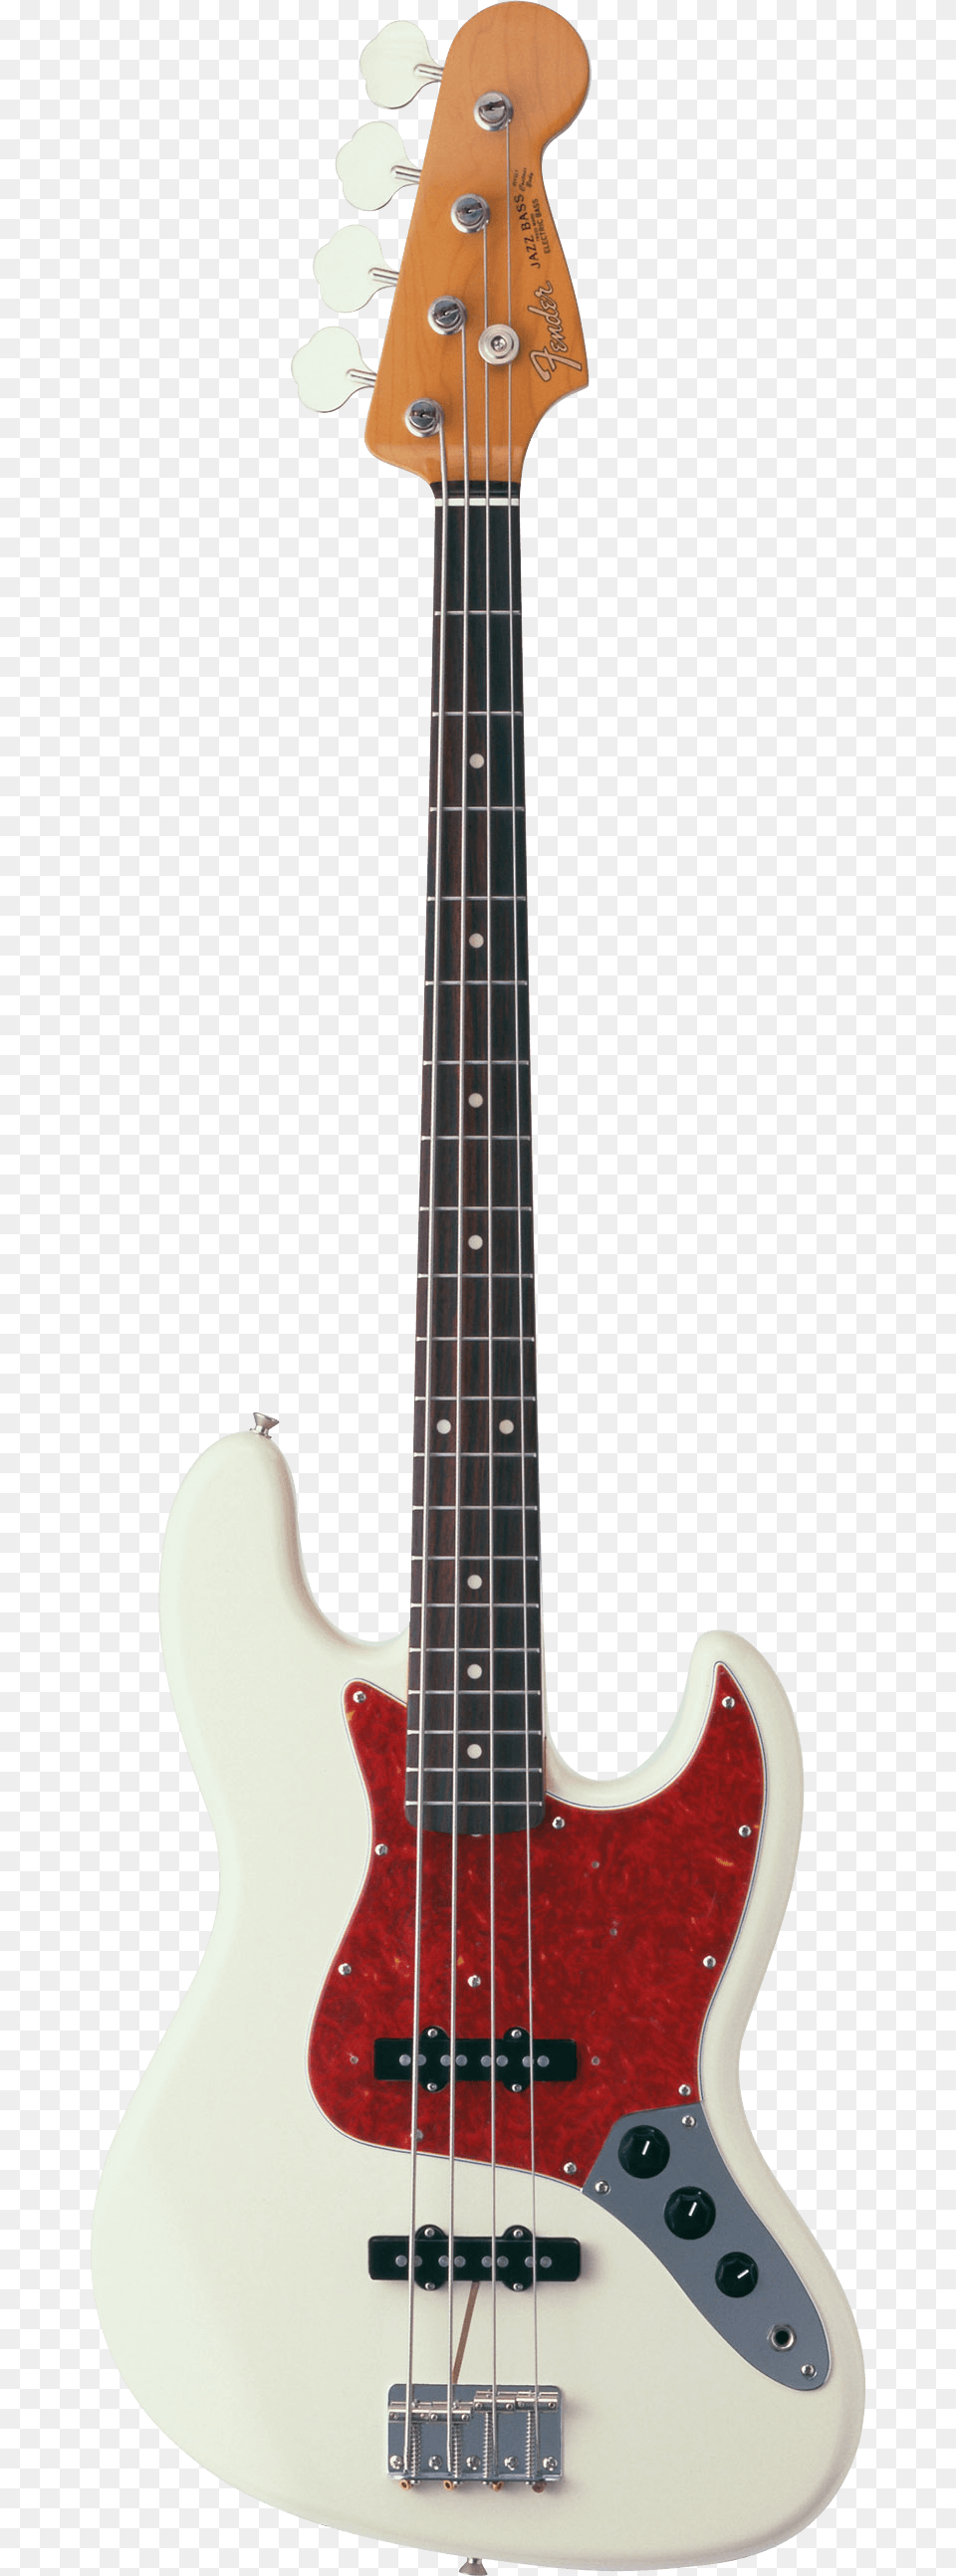 Fender Jazz Bass Guitar Guitar, Bass Guitar, Musical Instrument Free Png